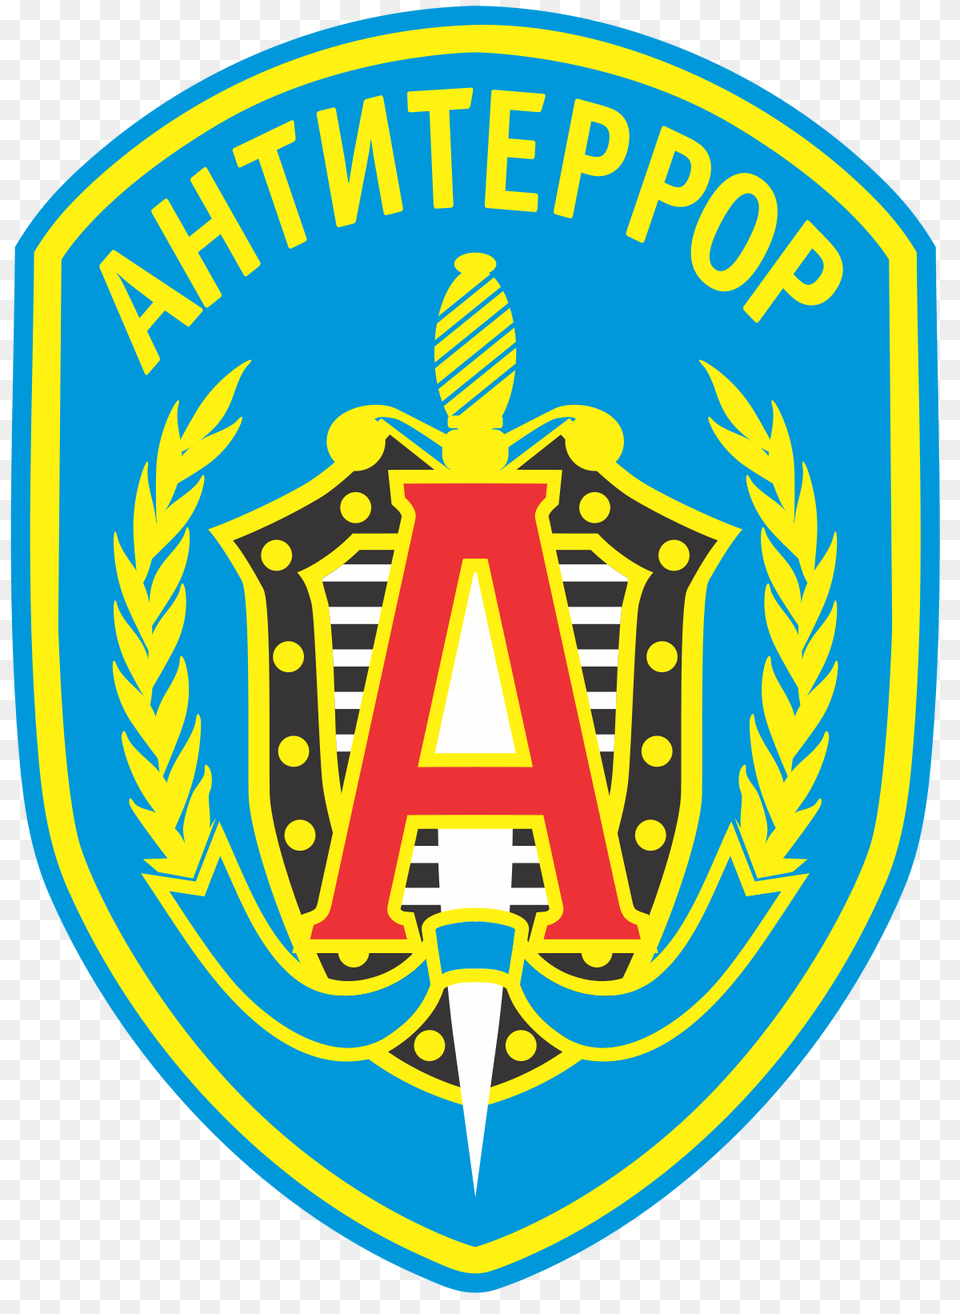 Alpha Group Spetsnaz Alpha Group Logo, Badge, Symbol, Emblem, Dynamite Free Png